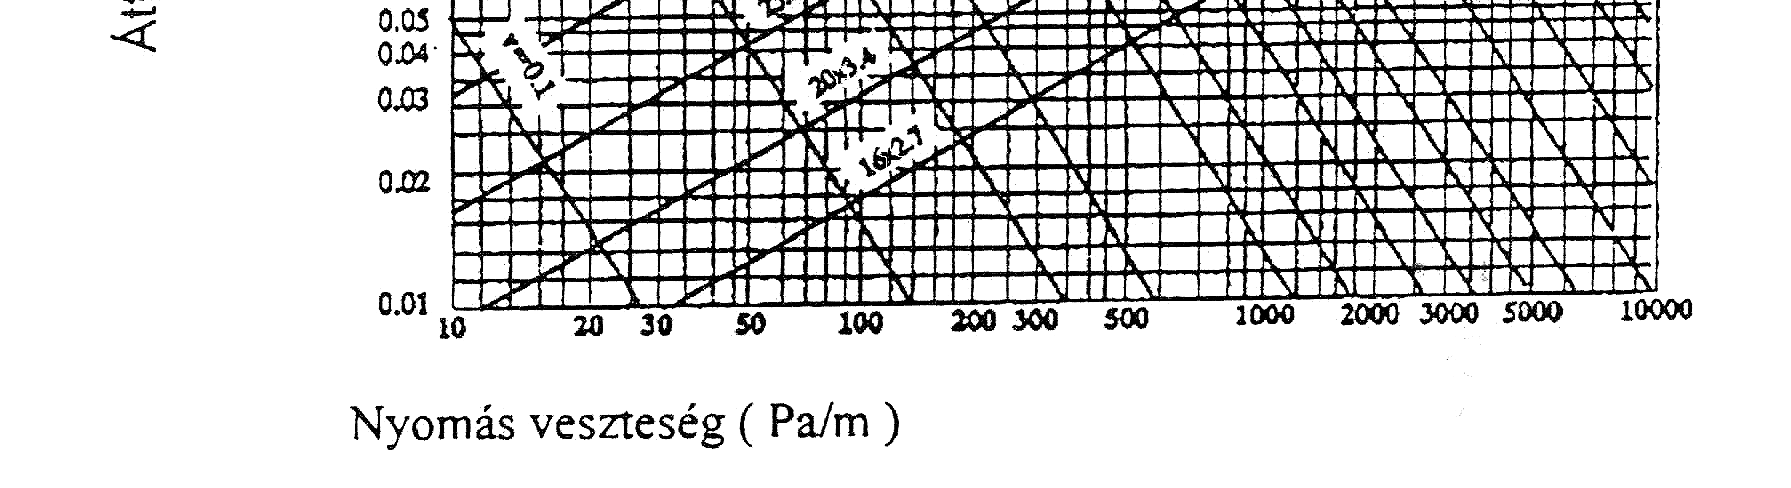 2.Grafikon - az egyedi kivitelű, vízszintes rendszerű csővezetékek nyomásveszteségeinek megállapításhoz Példa: Ø20 cső esetében 0.